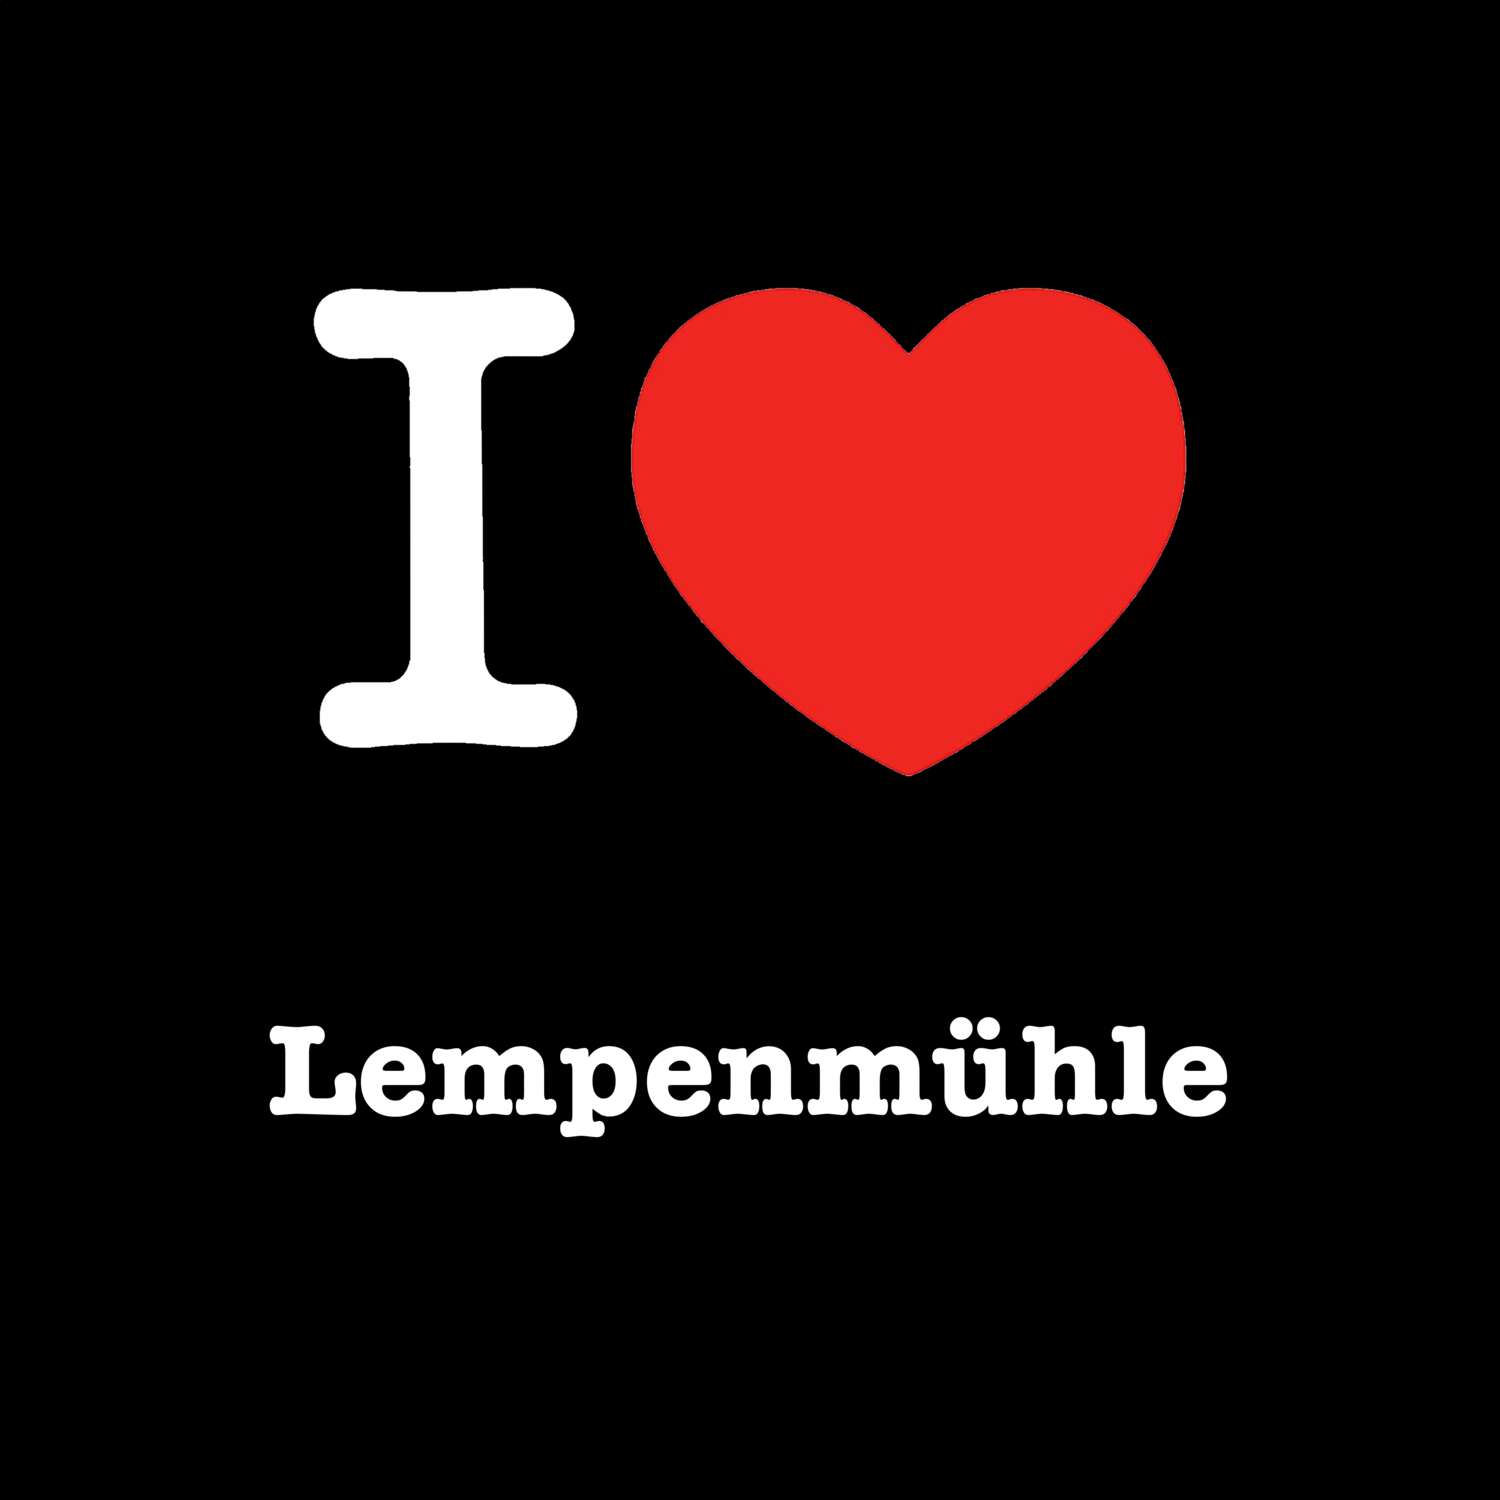 Lempenmühle T-Shirt »I love«